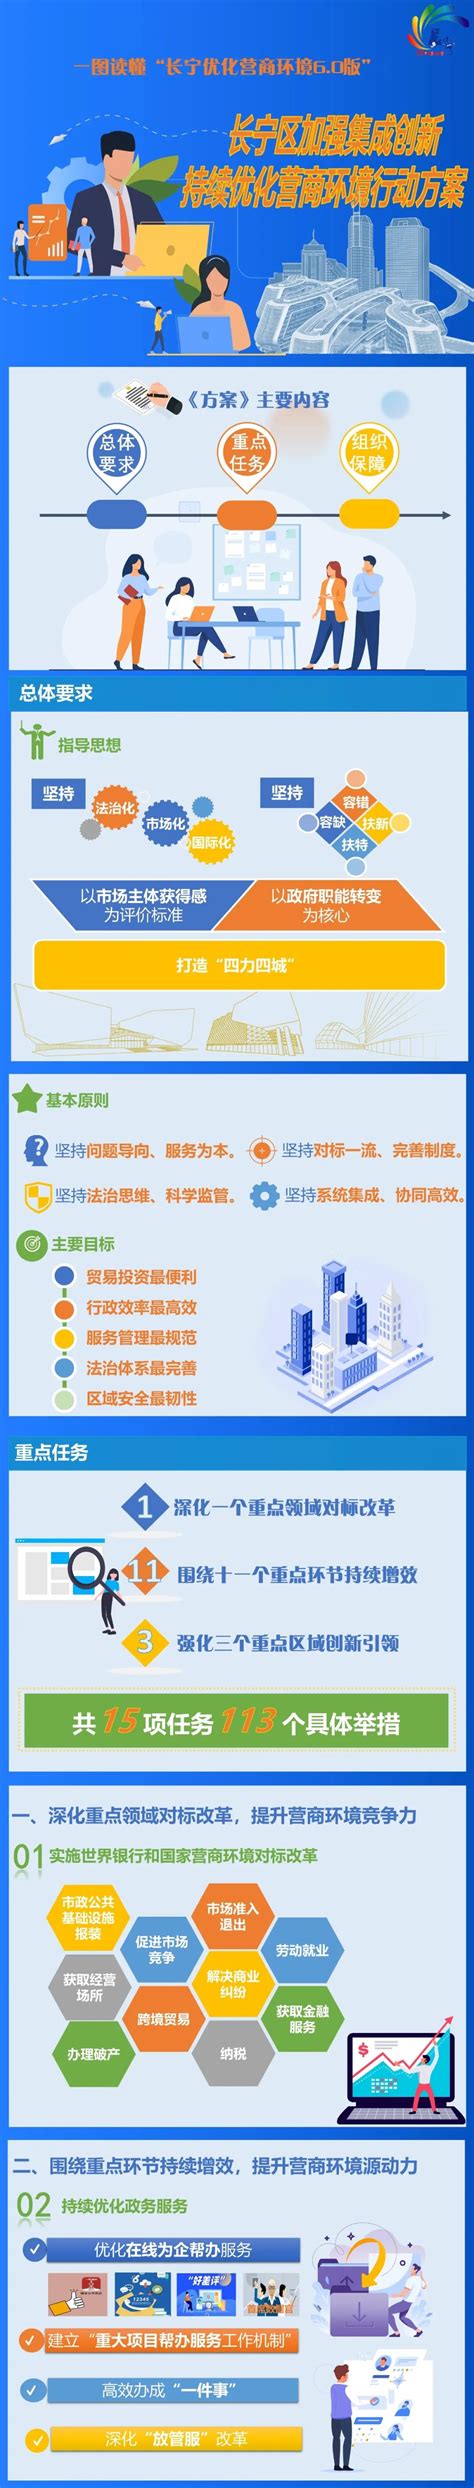 长宁区官网网站优化平台